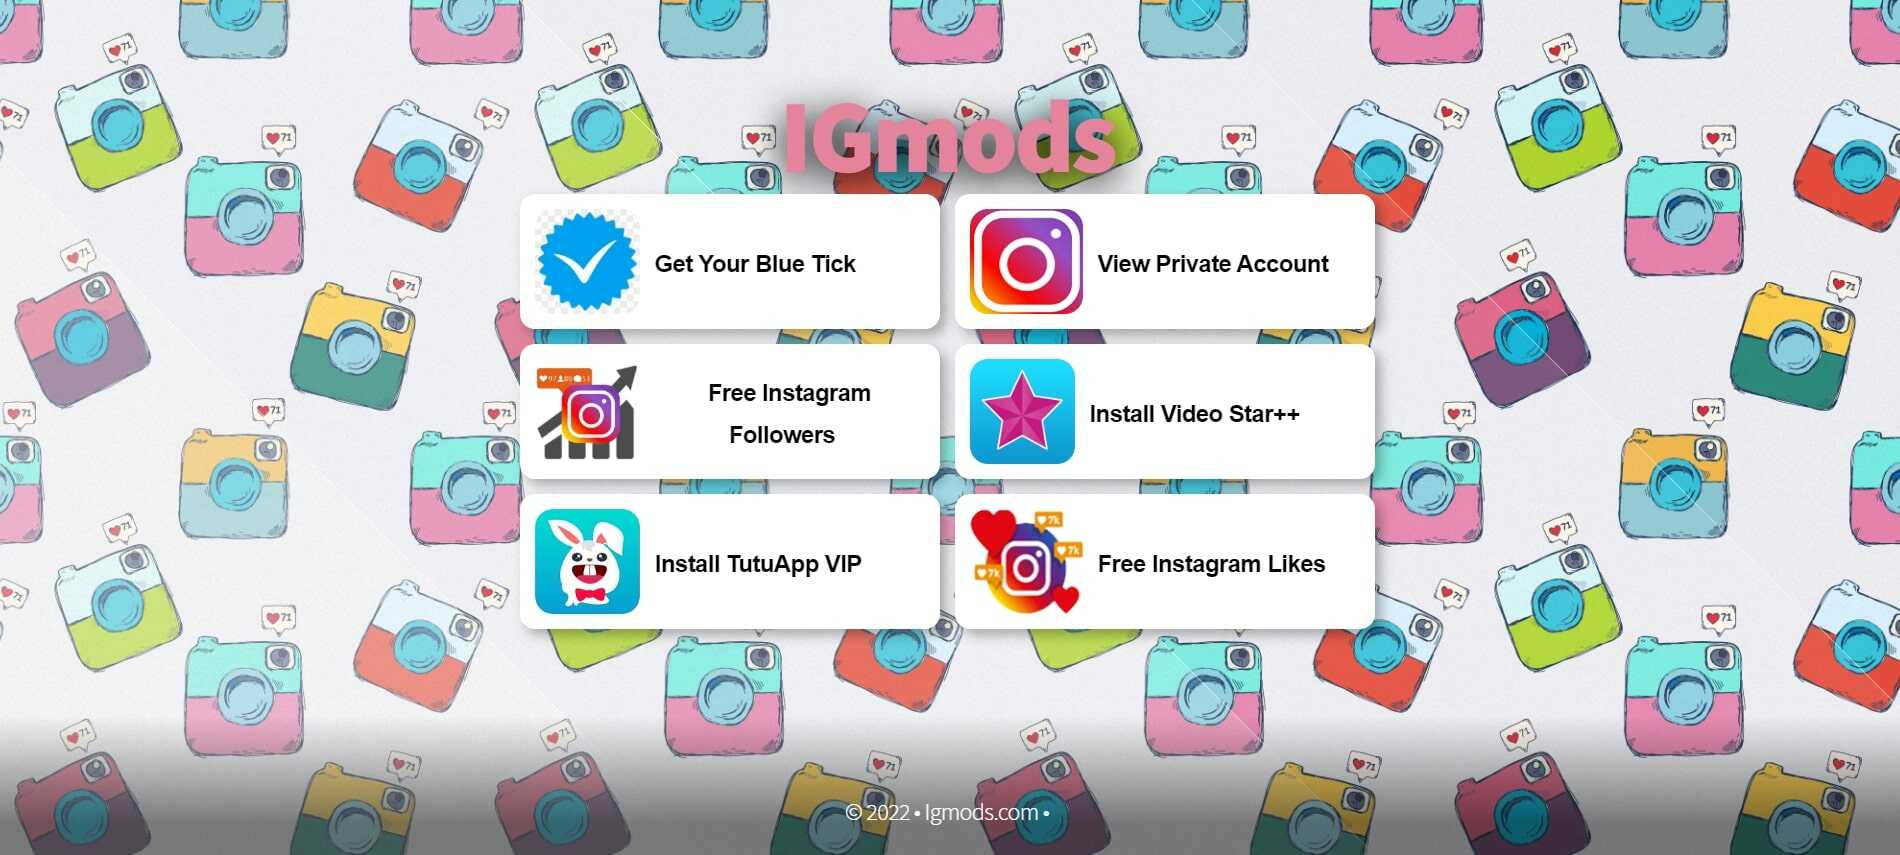 igmods.com instagram